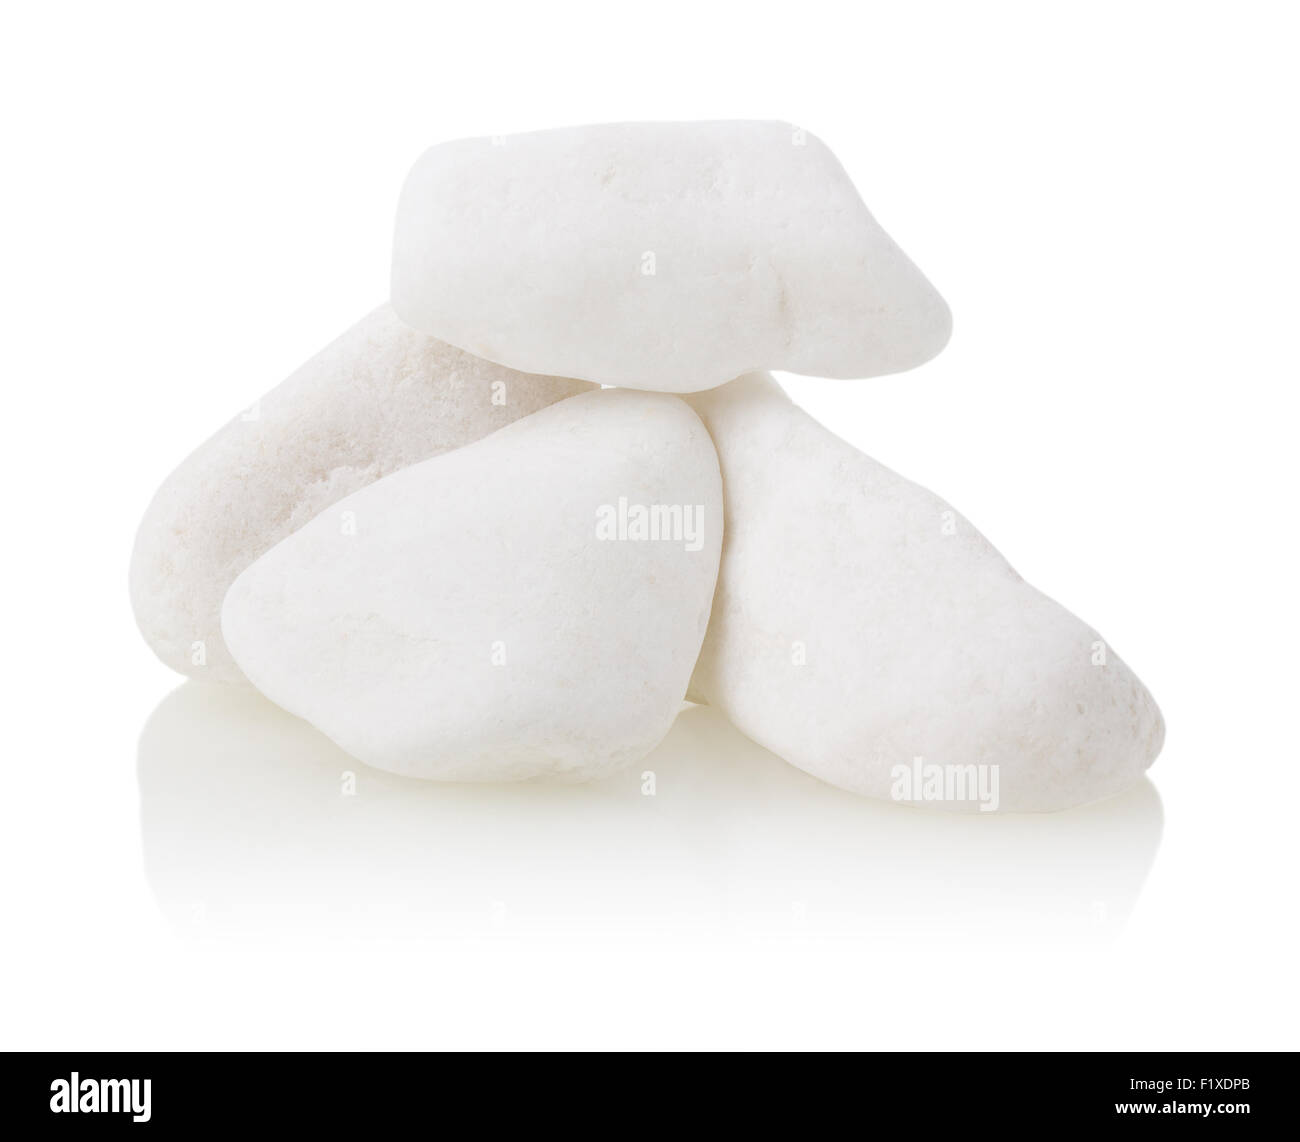 white stones on a white background. Stock Photo